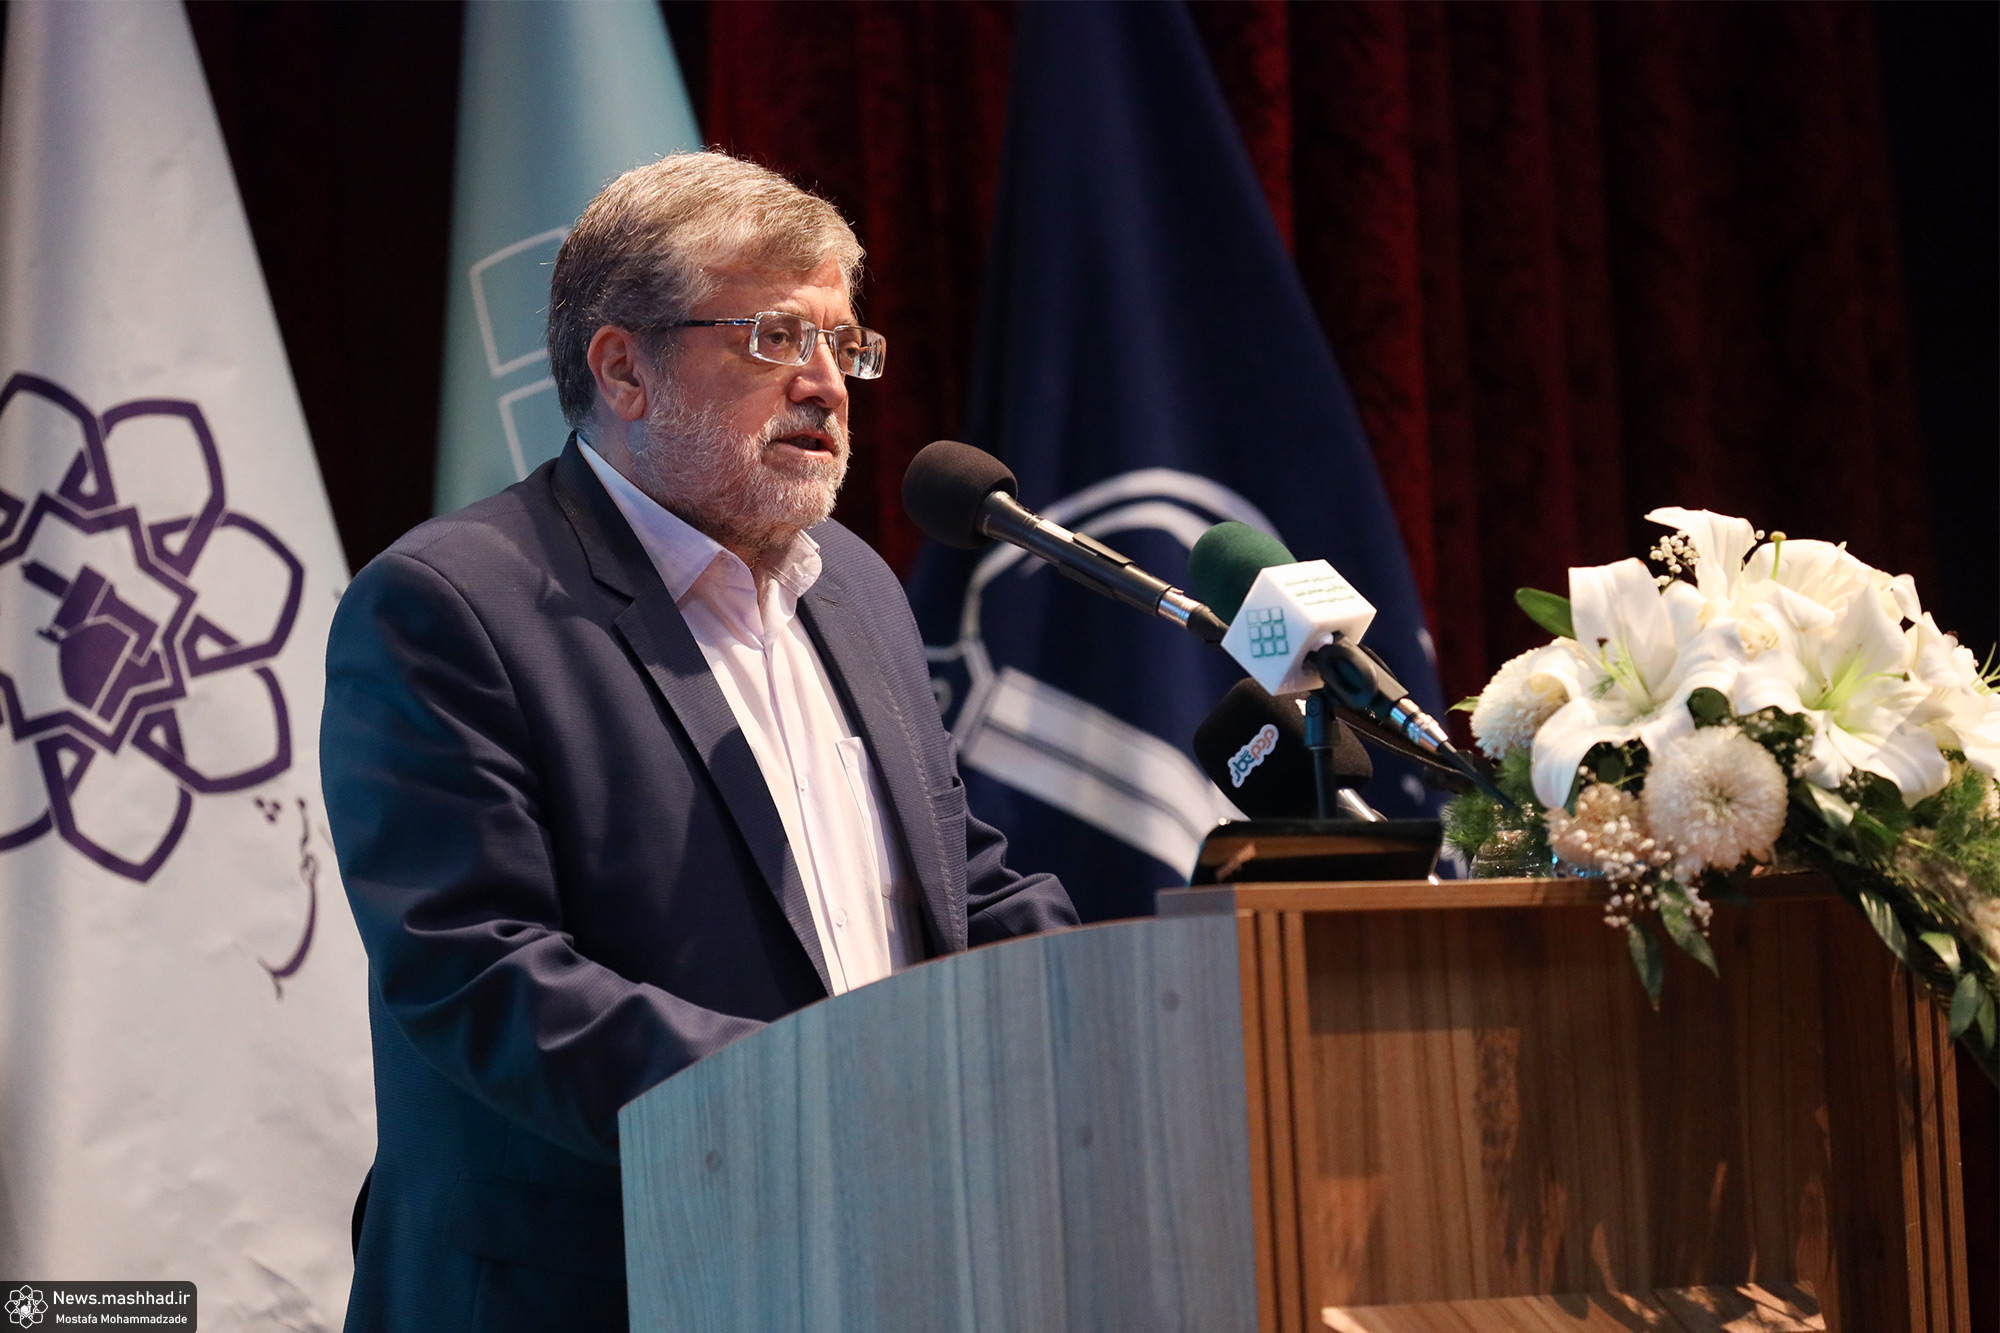 شهردار مشهد در مراسم افتتاح کنفرانس برنامه‌ریزی و مدیریت شهری عنوان کرد:  در برنامه ریزی شهری باید با مردم برنامه ریزی کنیم نه بر مردم